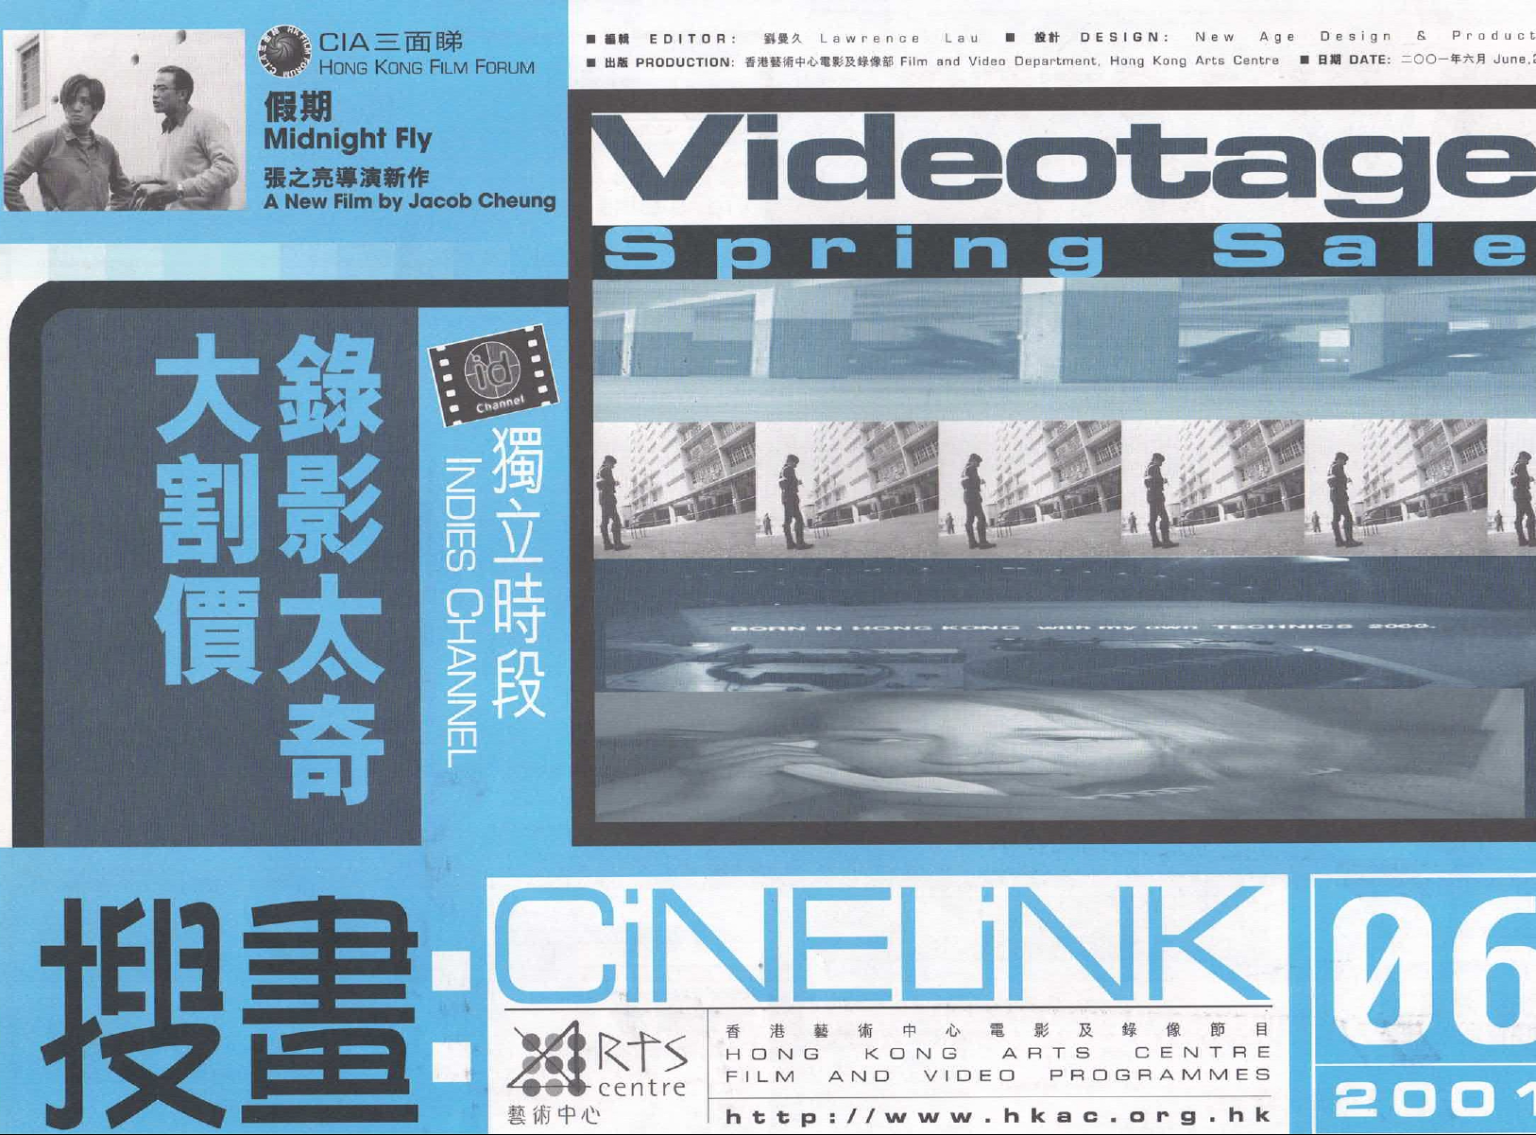 CiNELiNK 06: Videotage Spring Sale – Leaflet 投畫- 錄像太奇大割價 – 單張